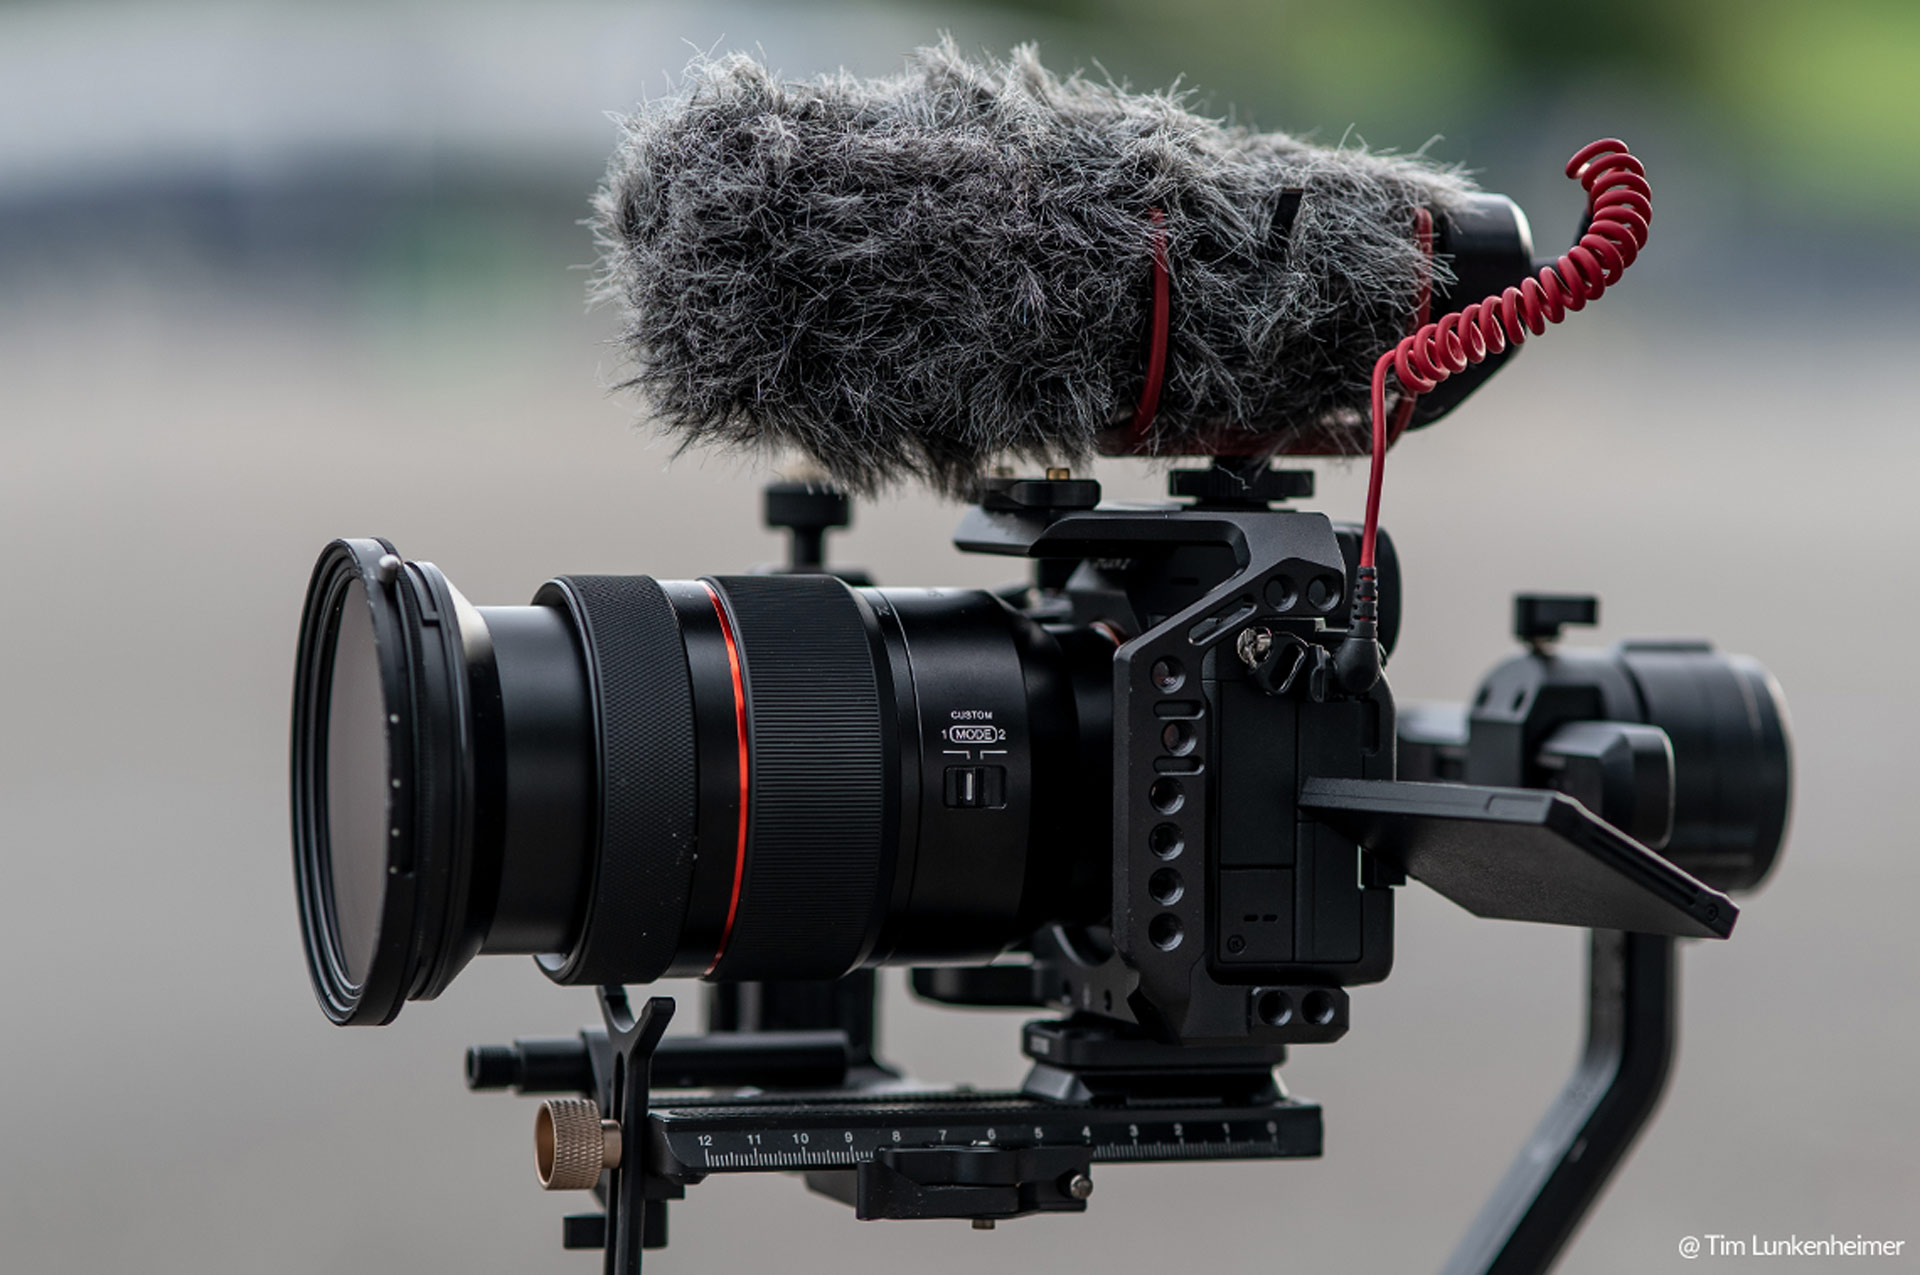 Samyang AF 24-70mm F2.8 FE Lens Announced - Optimized for Video